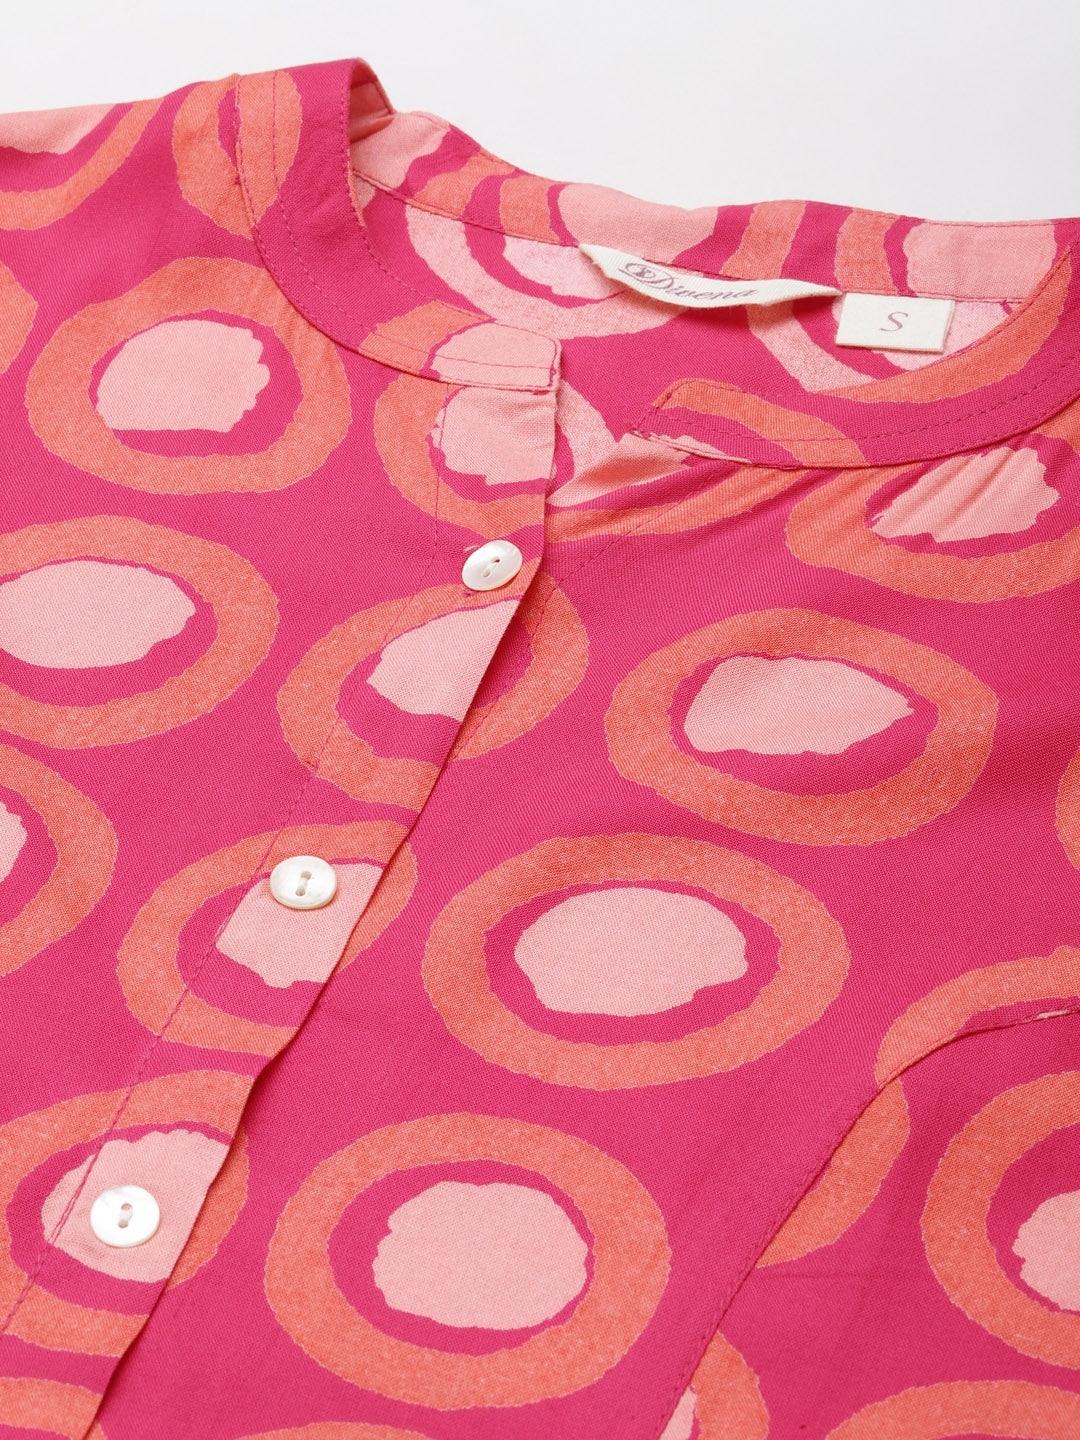 Divena Pink Rayon Shirt Style Top - divena world